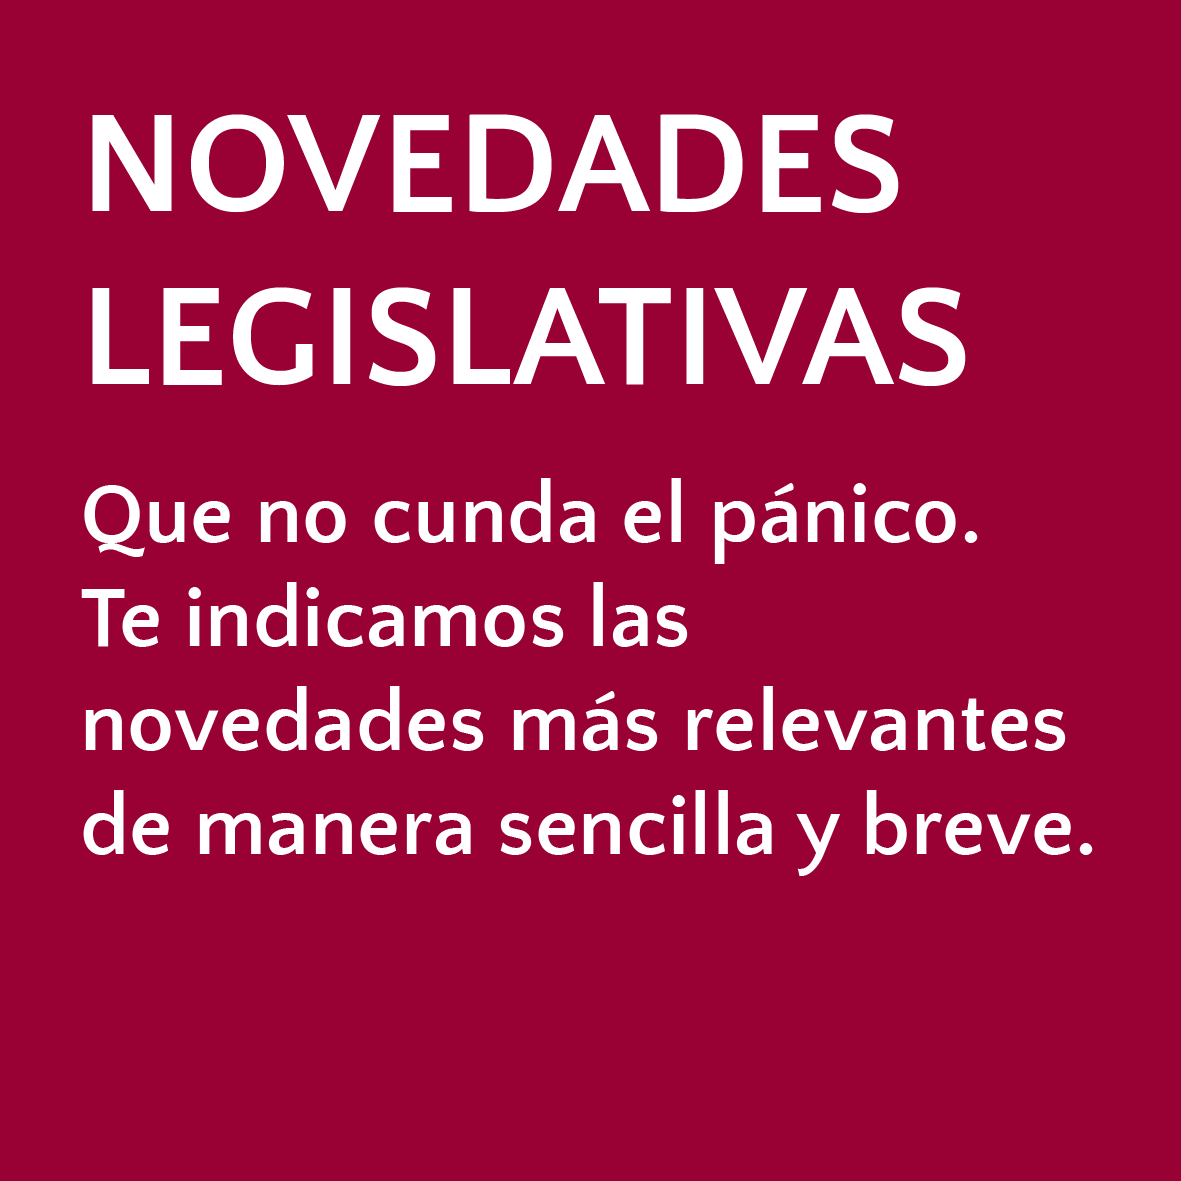 Novedades legislativas